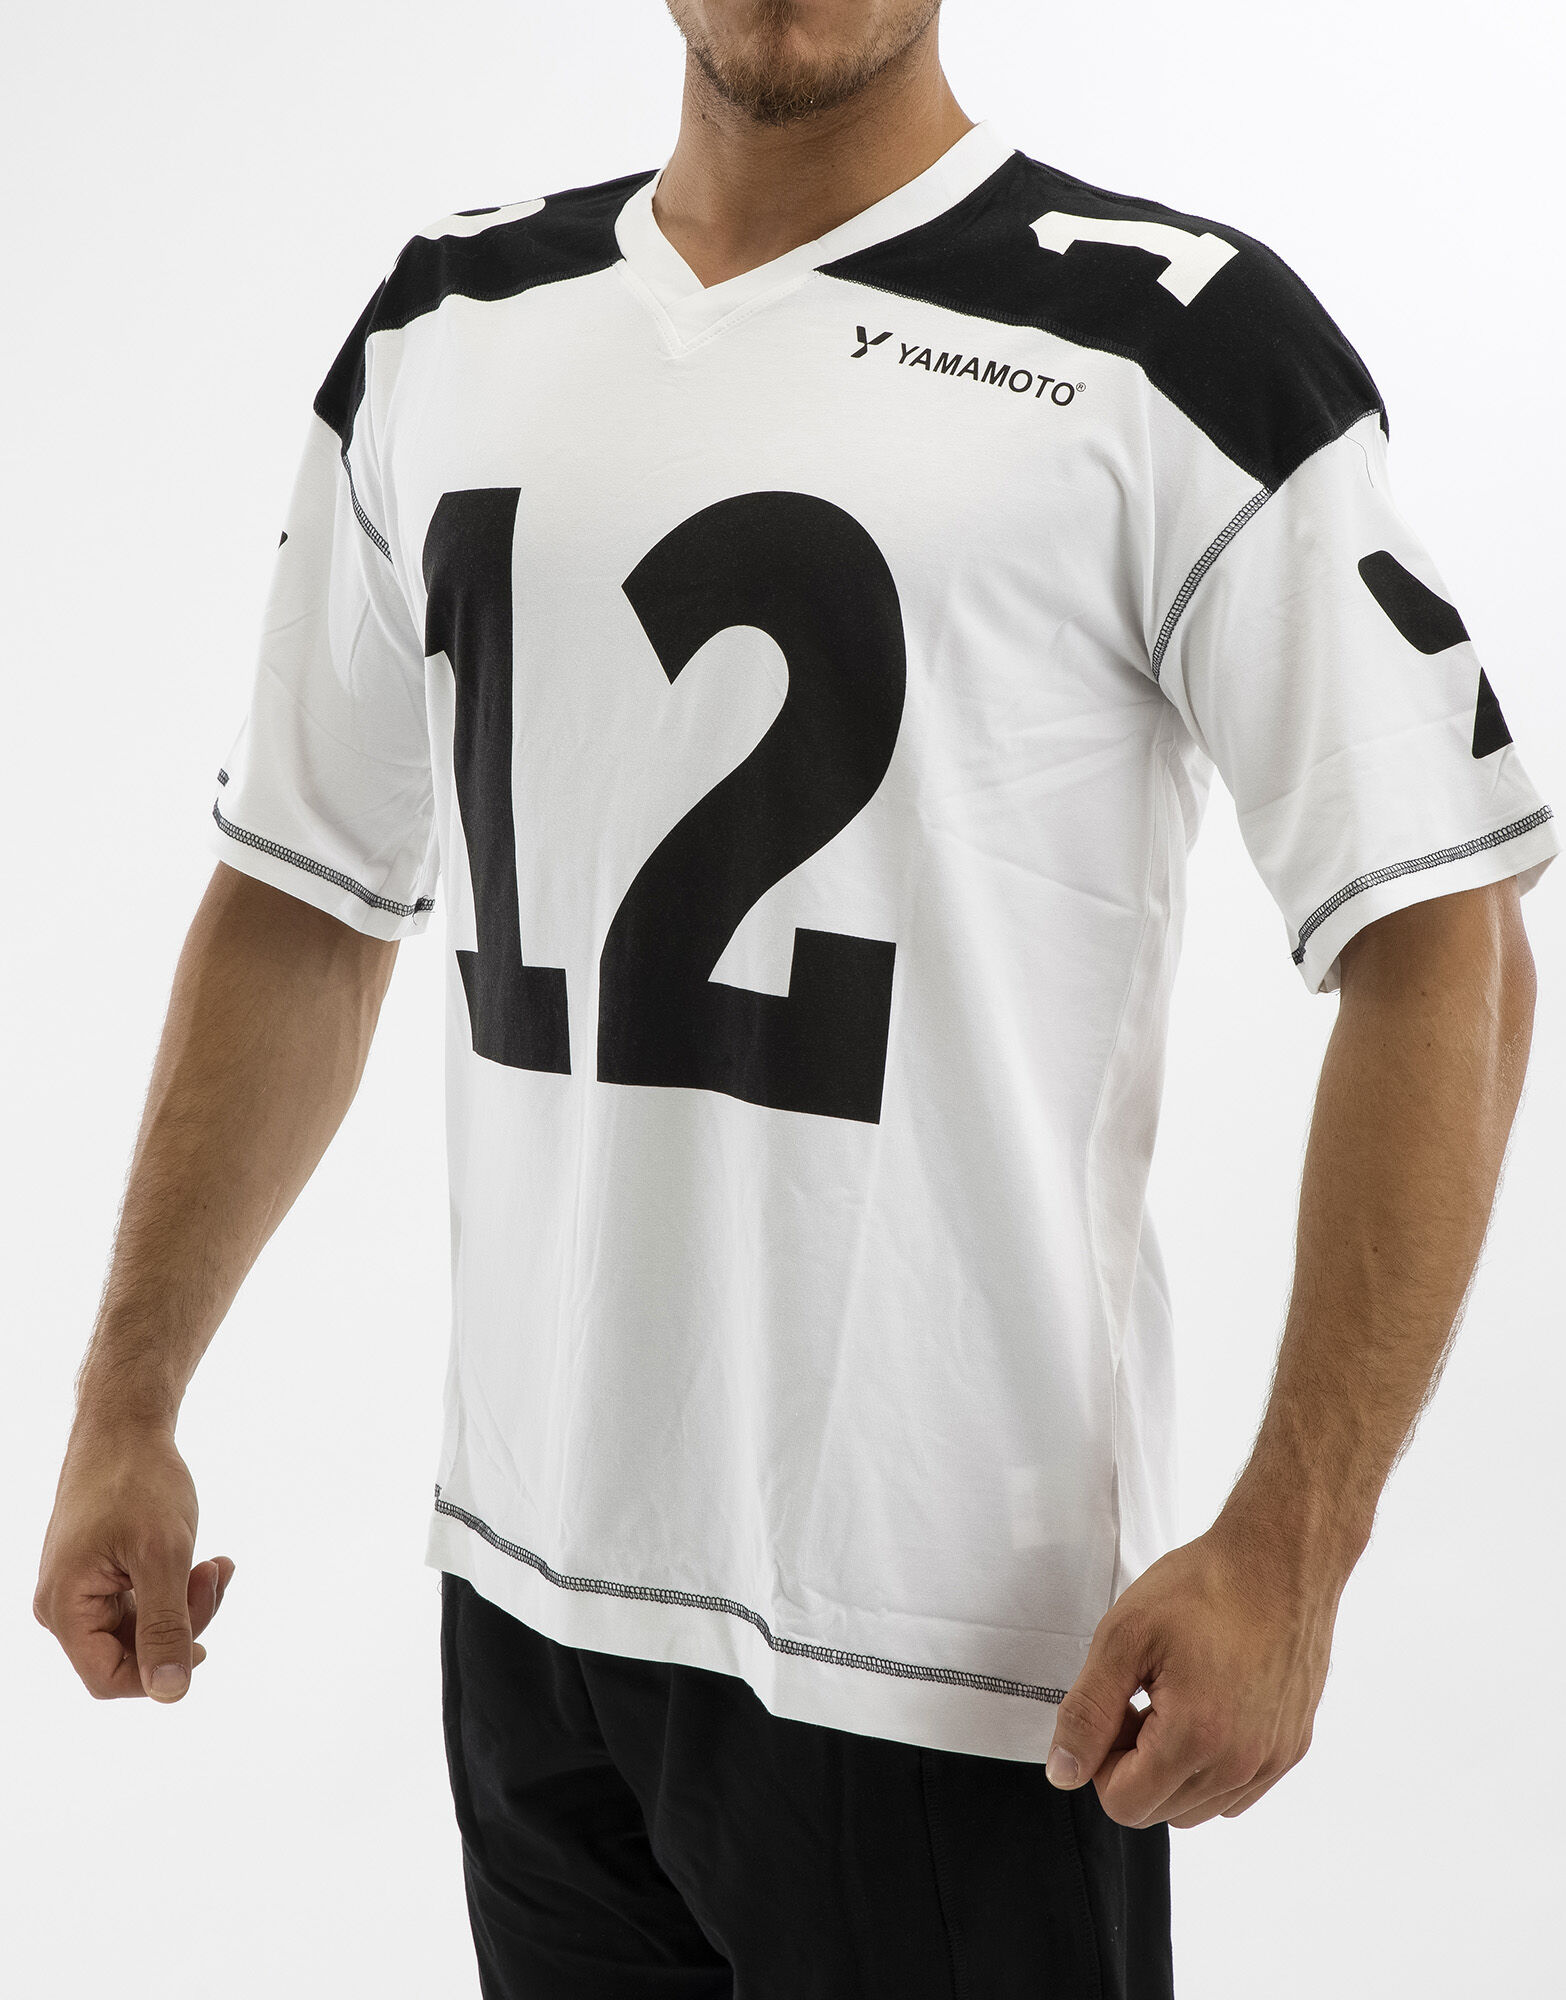 YAMAMOTO OUTFIT Man Football T-Shirt Colore: Bianco/nero Xxxl